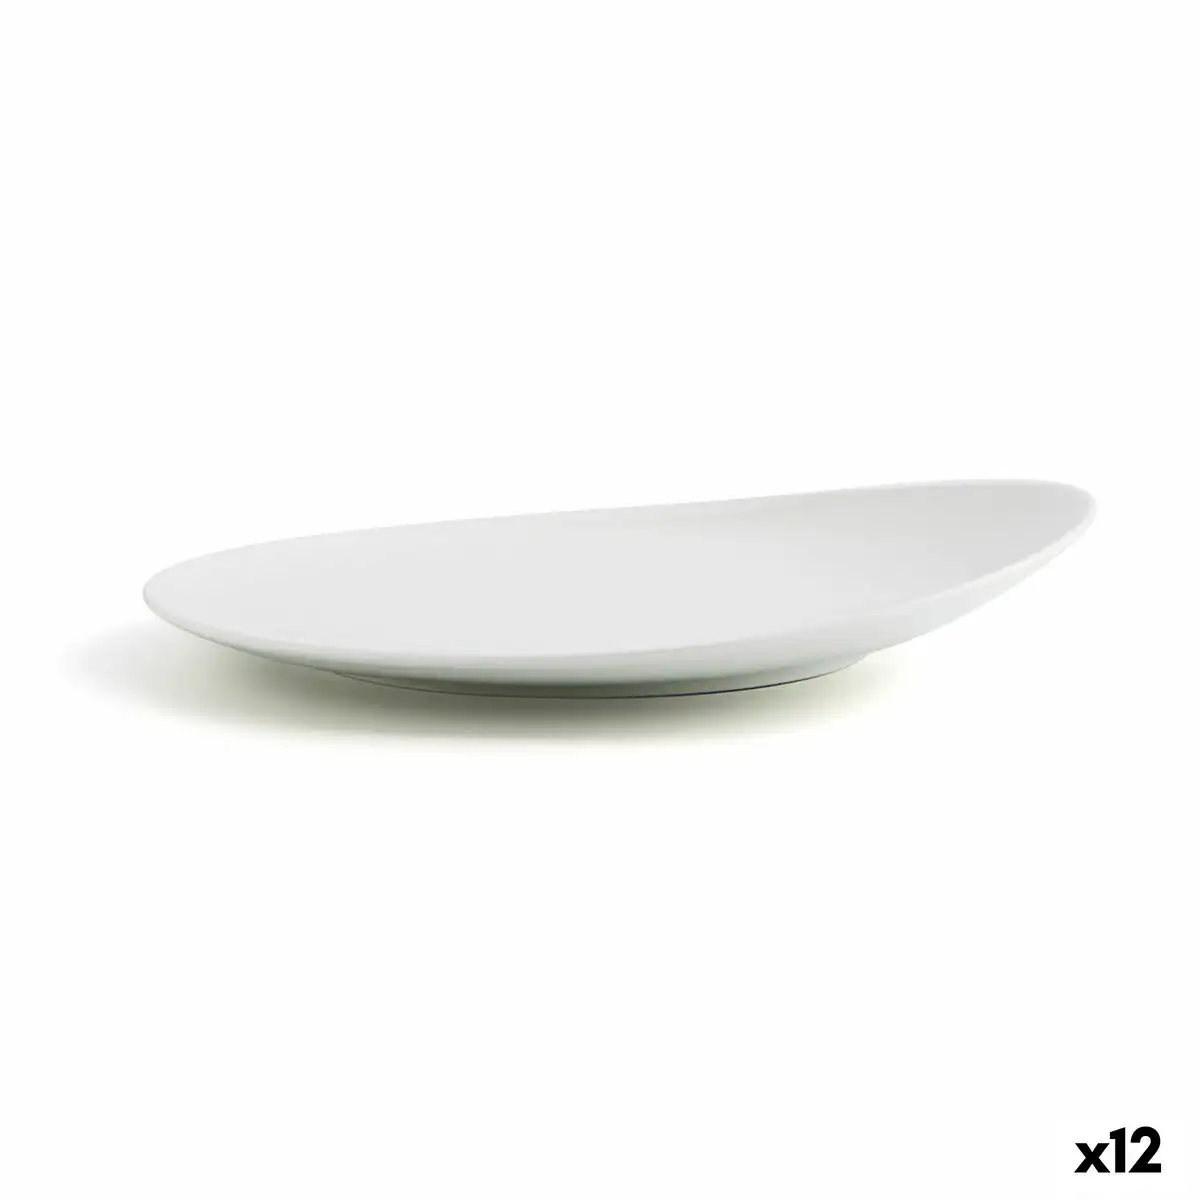 Assiette plate ariane vital coupe ceramique blanc o 27 cm 12 unites _5657. DIAYTAR SENEGAL - Là où la Découverte est au Rendez-vous. Plongez dans notre catalogue et trouvez des articles qui éveilleront votre curiosité et élargiront vos horizons.